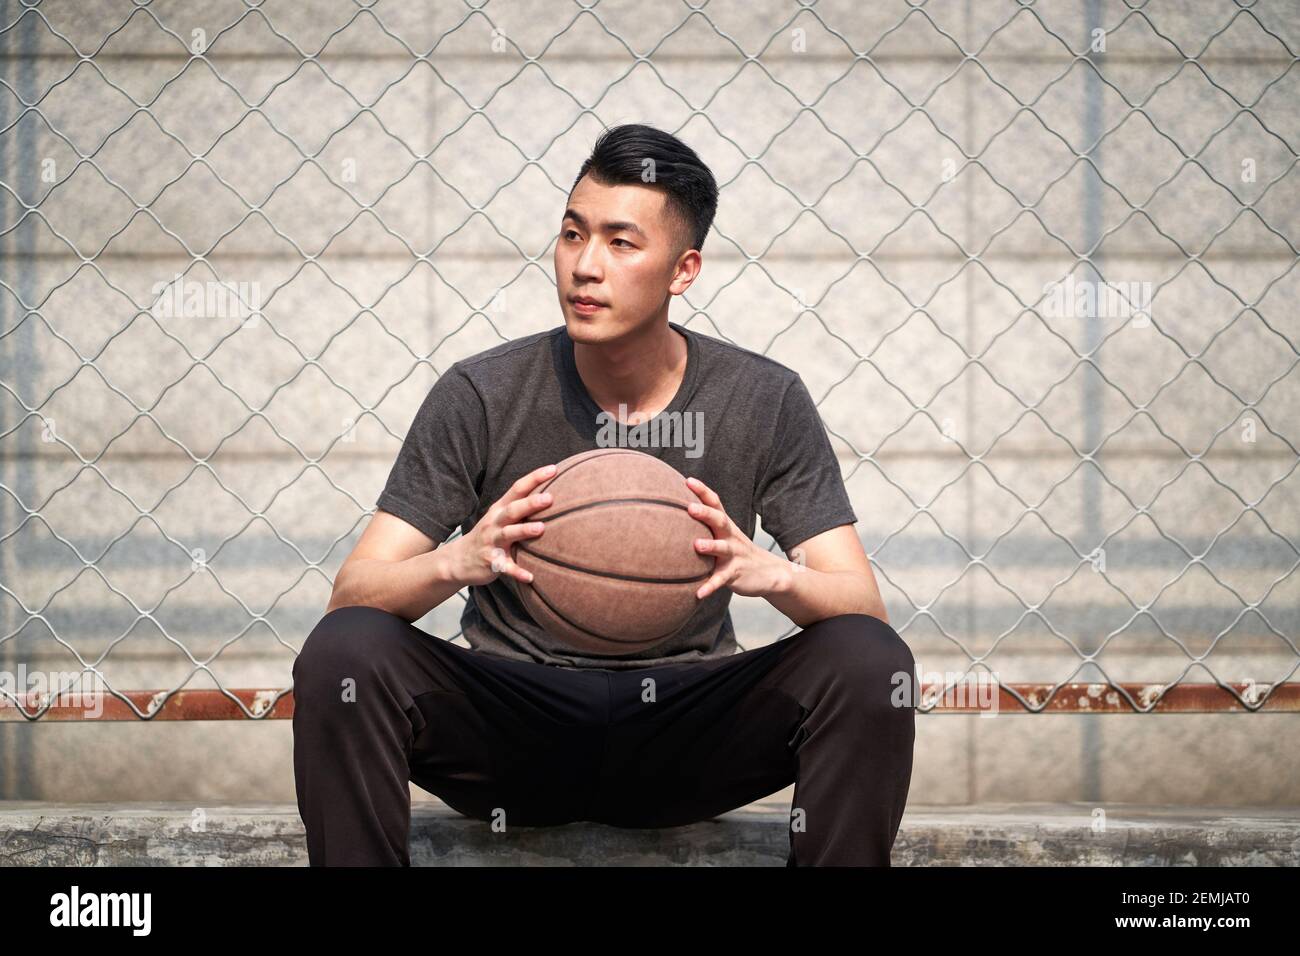 un jeune joueur asiatique de basket-ball tenant une balle assise à en cour Banque D'Images